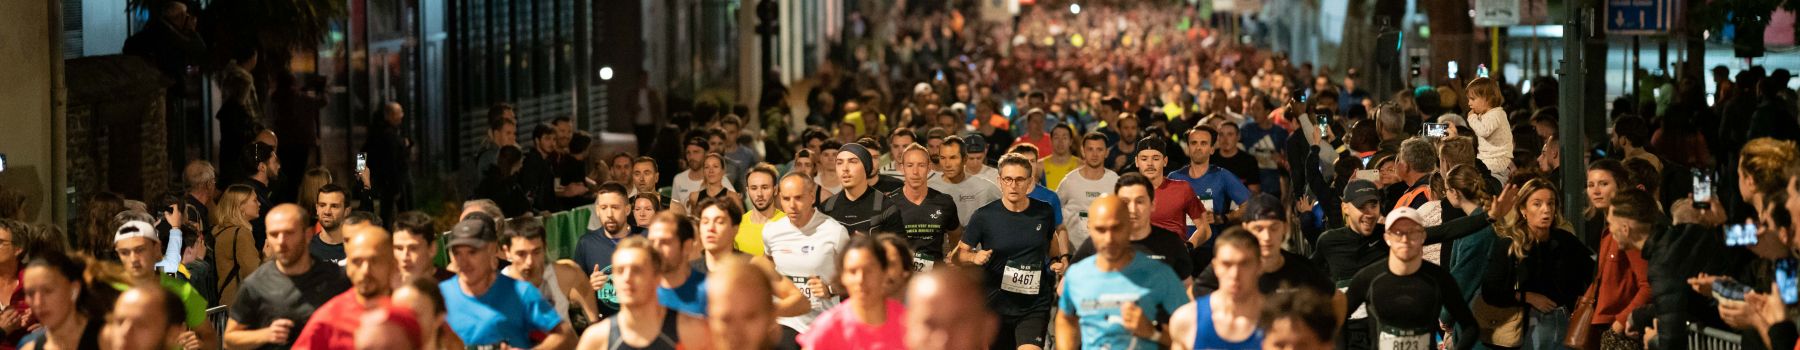 Les statistiques des courses du Marathon Vert